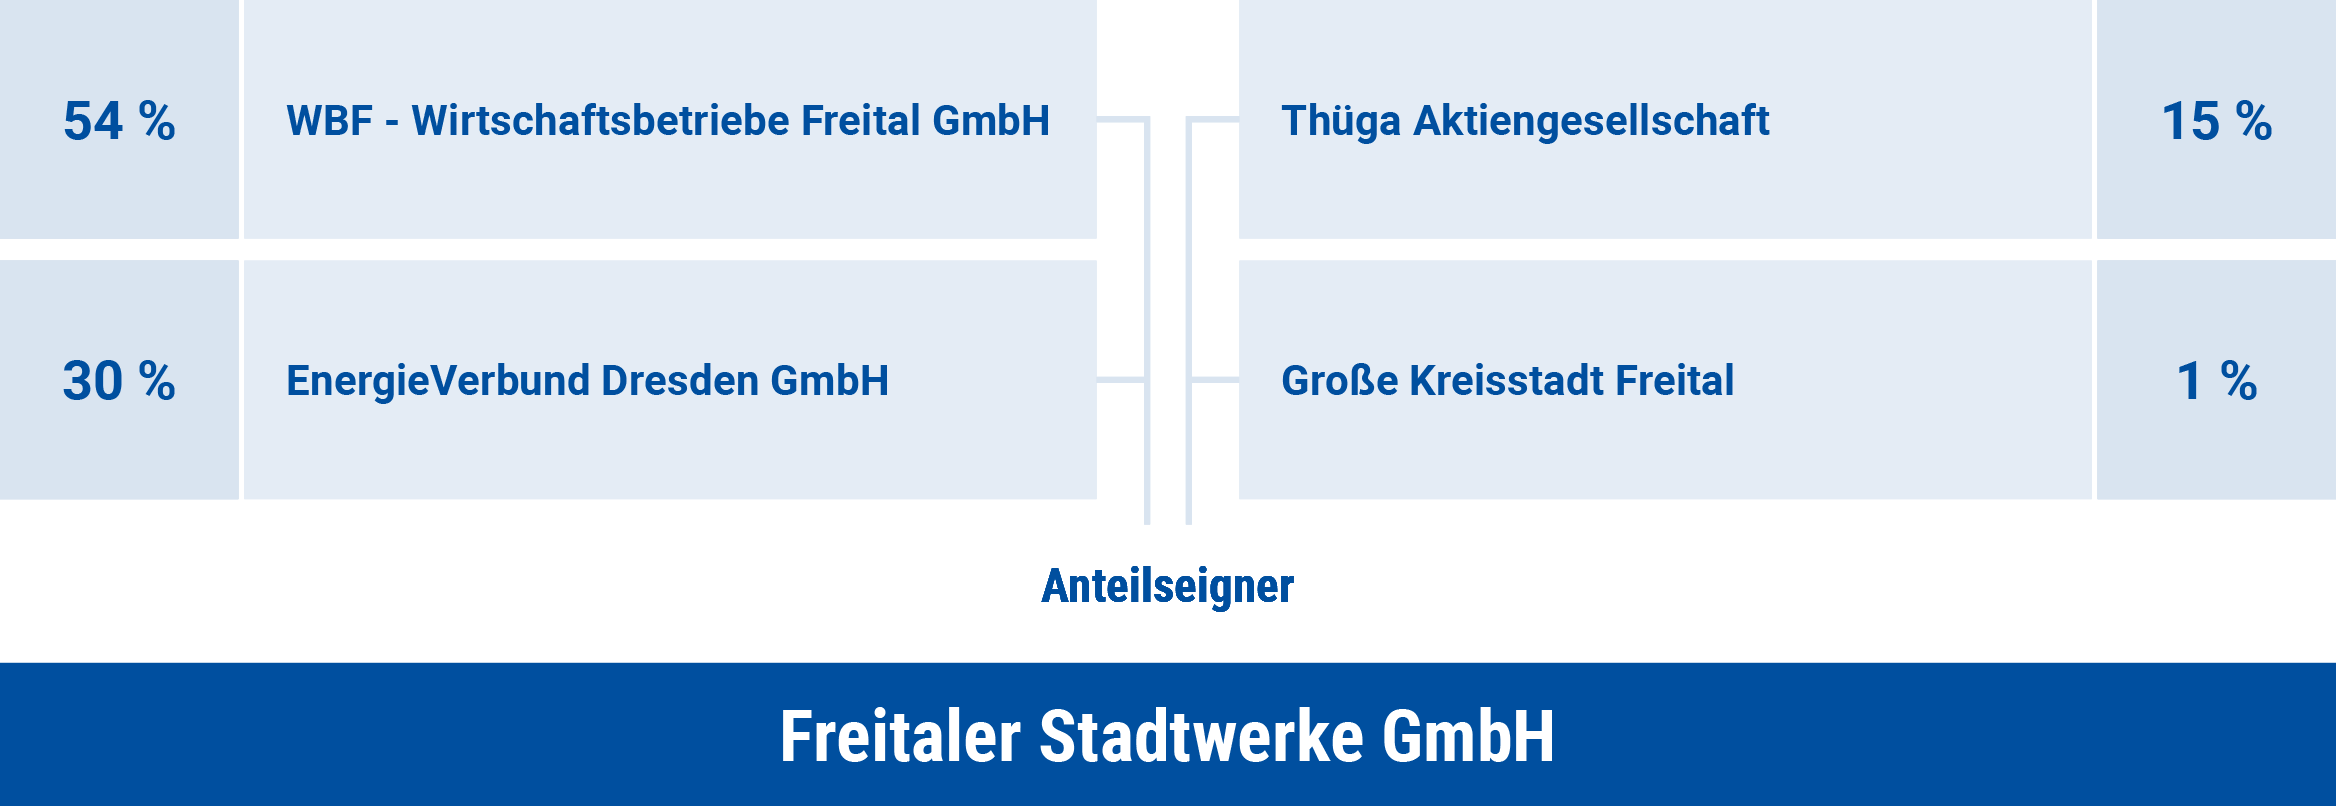 Gesellschaftsstruktur der Freitaler Stadtwerke GmbH